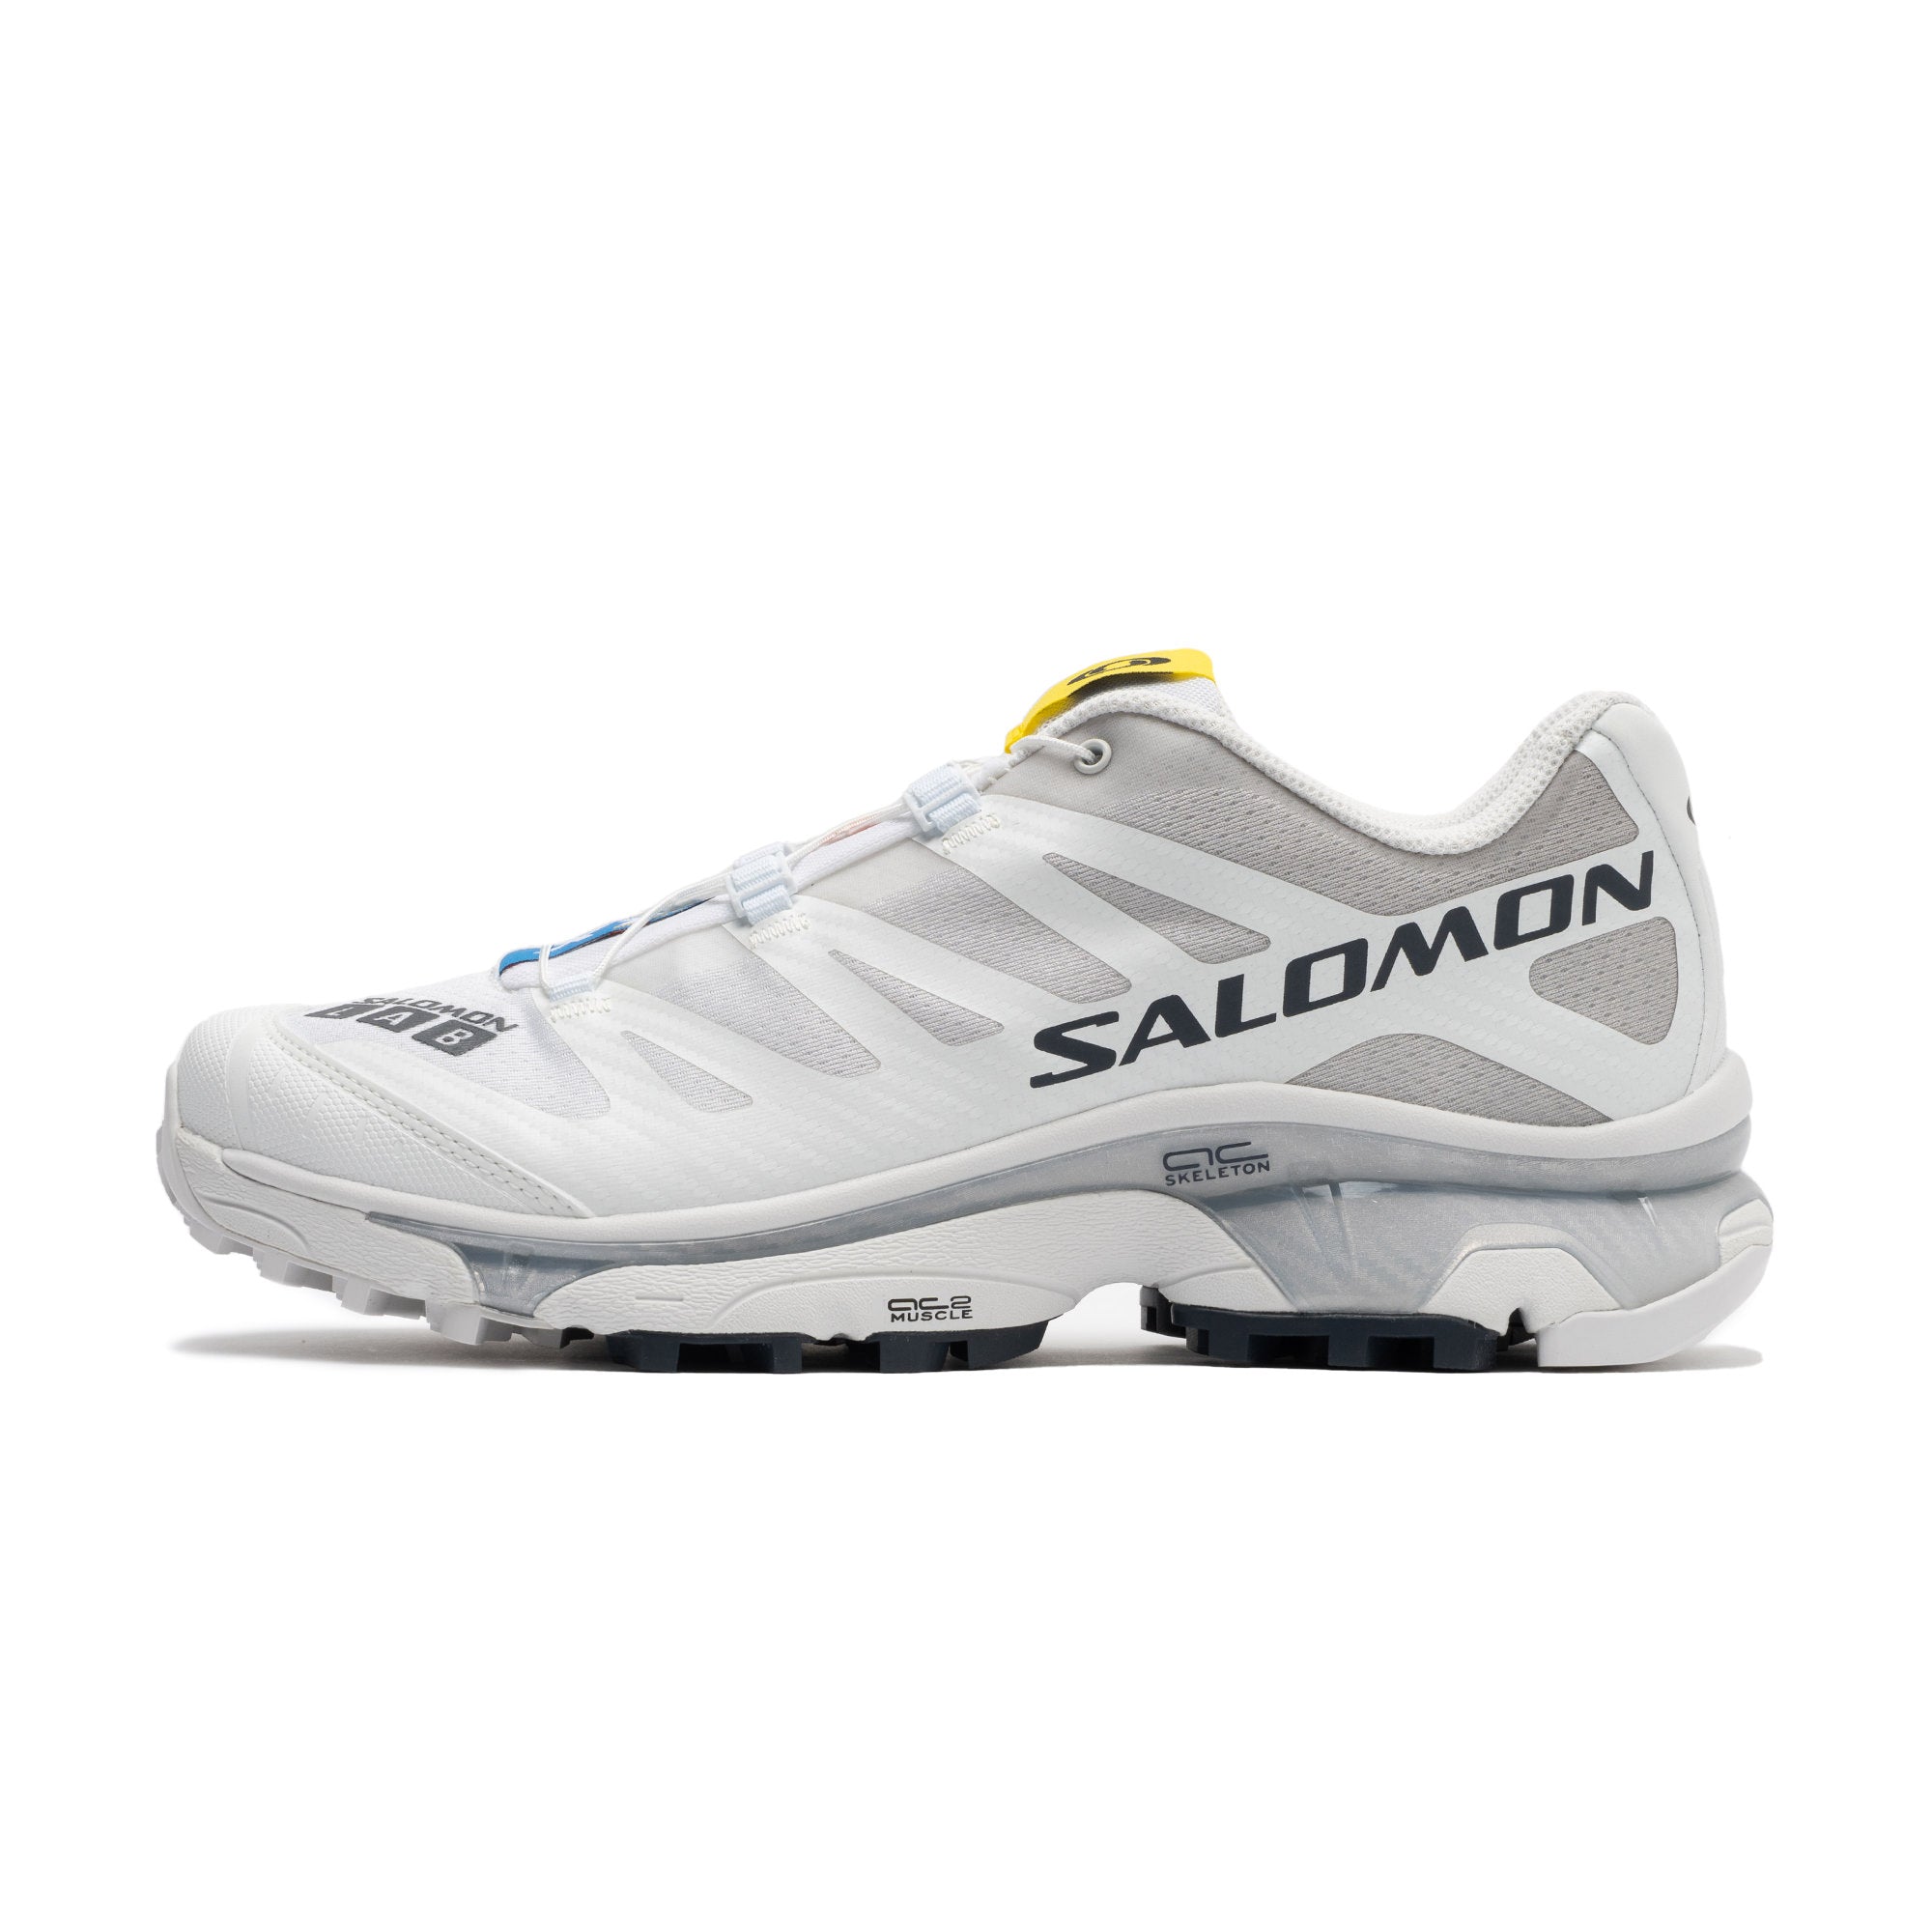 zapatillas de running Salomon entrenamiento baratas menos de 60